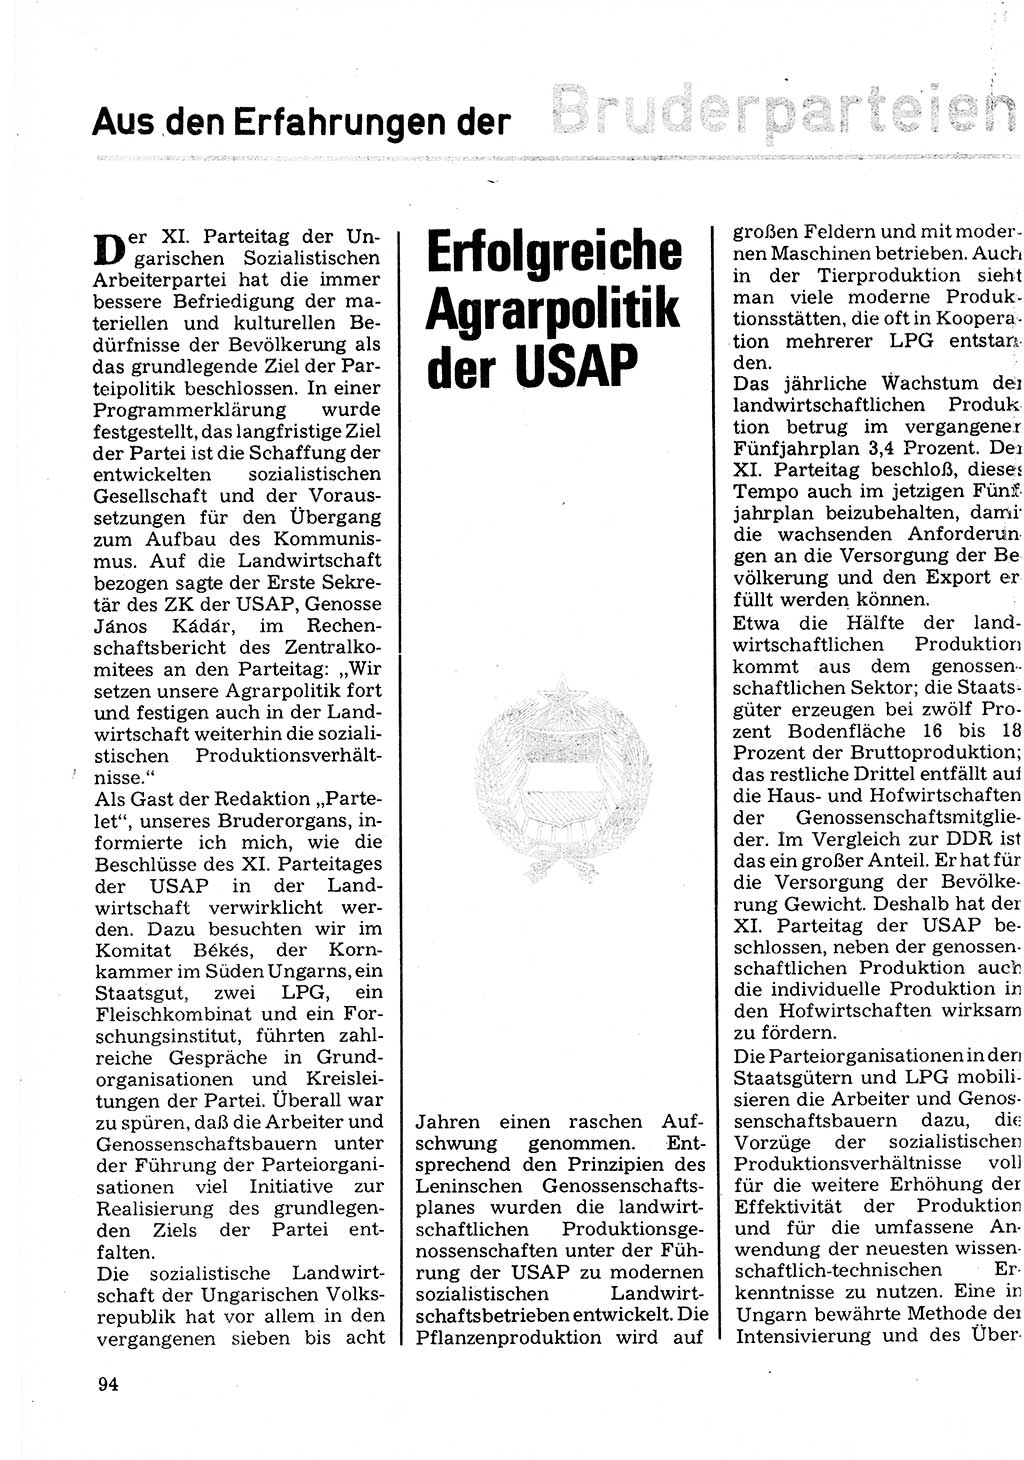 Neuer Weg (NW), Organ des Zentralkomitees (ZK) der SED (Sozialistische Einheitspartei Deutschlands) für Fragen des Parteilebens, 32. Jahrgang [Deutsche Demokratische Republik (DDR)] 1977, Seite 94 (NW ZK SED DDR 1977, S. 94)